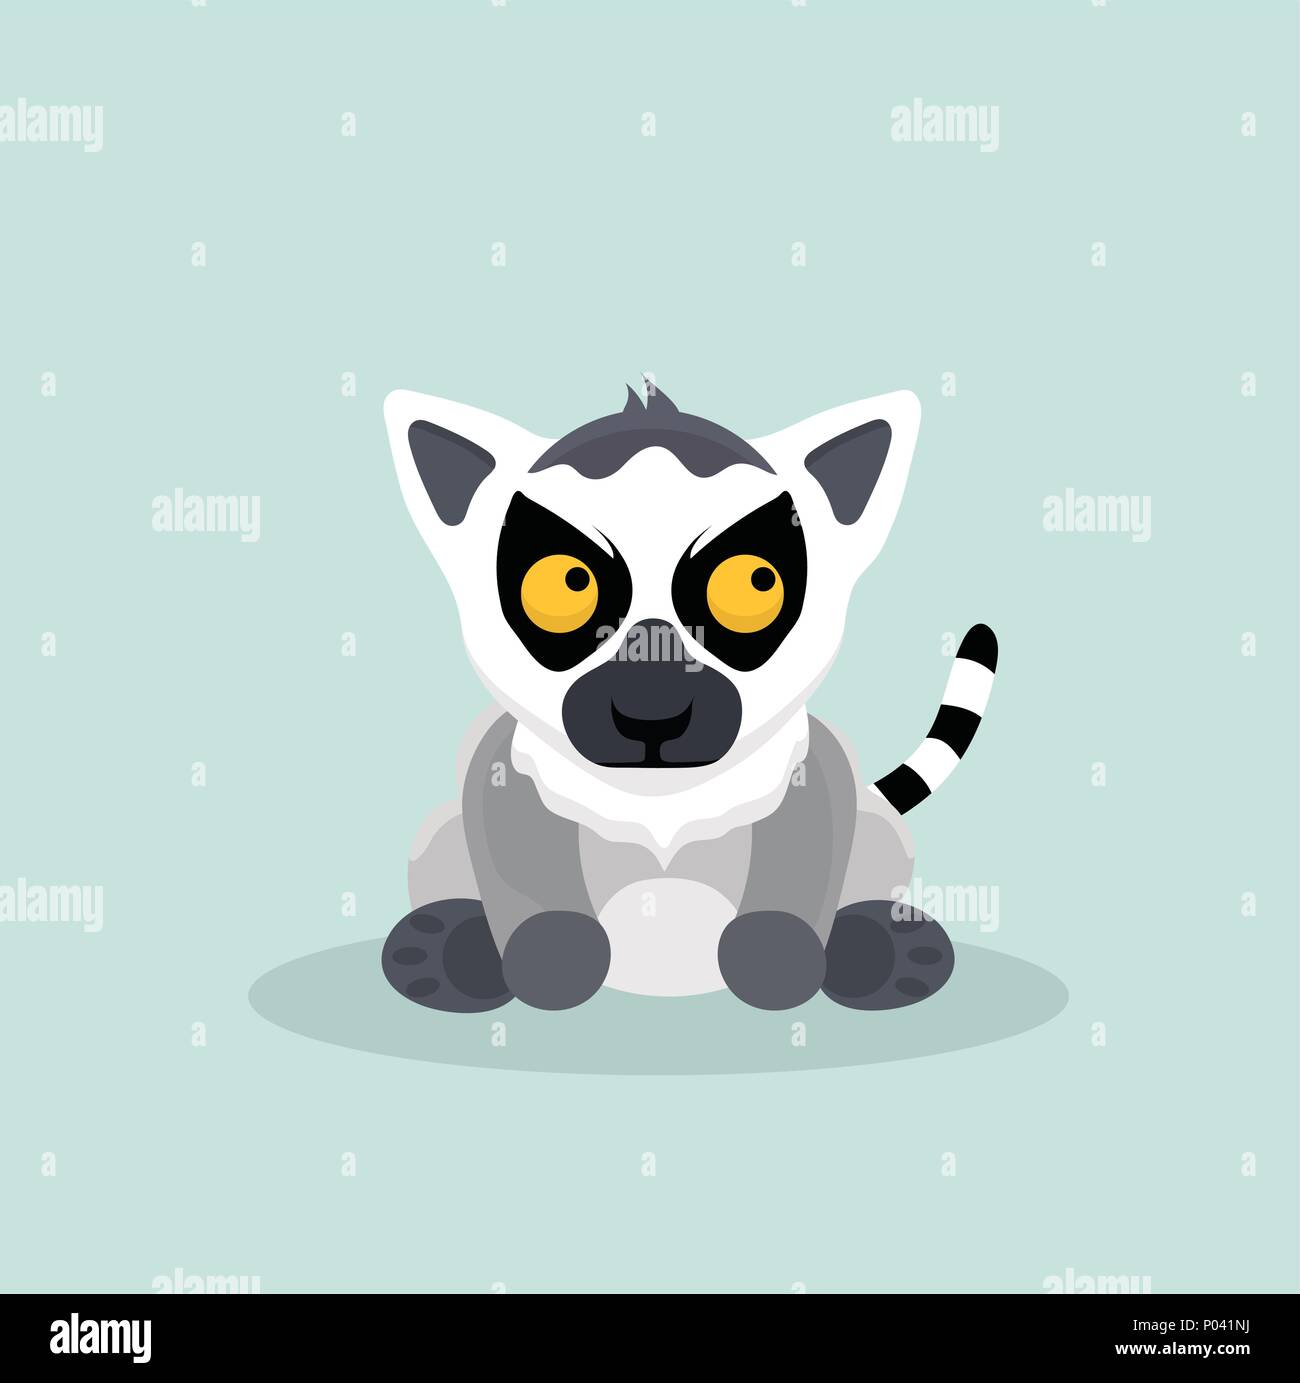 Cute cartoon ring tailed lemur. Stock Vector